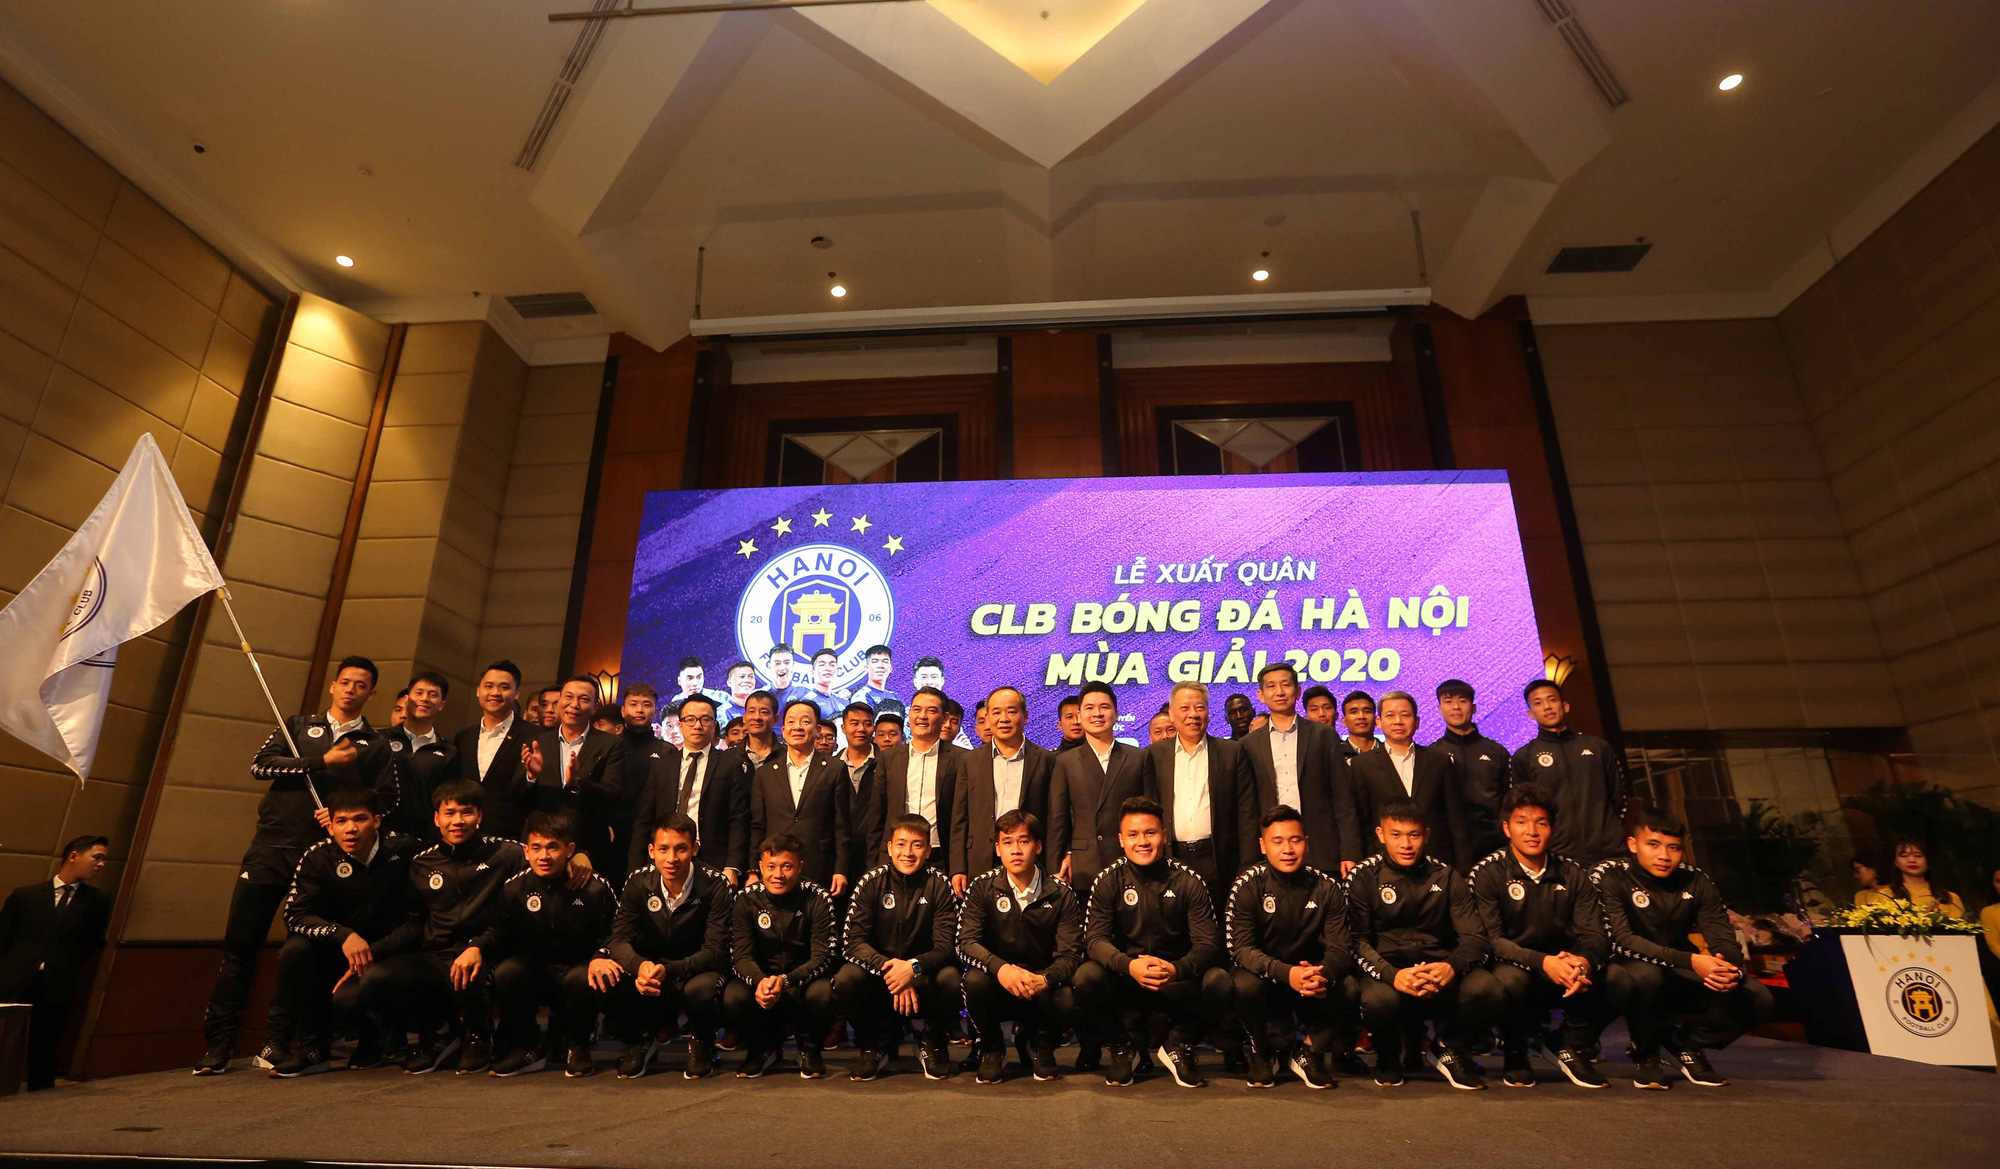 Thứ trưởng Lê Khánh Hải dự lễ xuất quân CLB Hà Nội mùa giải 2020